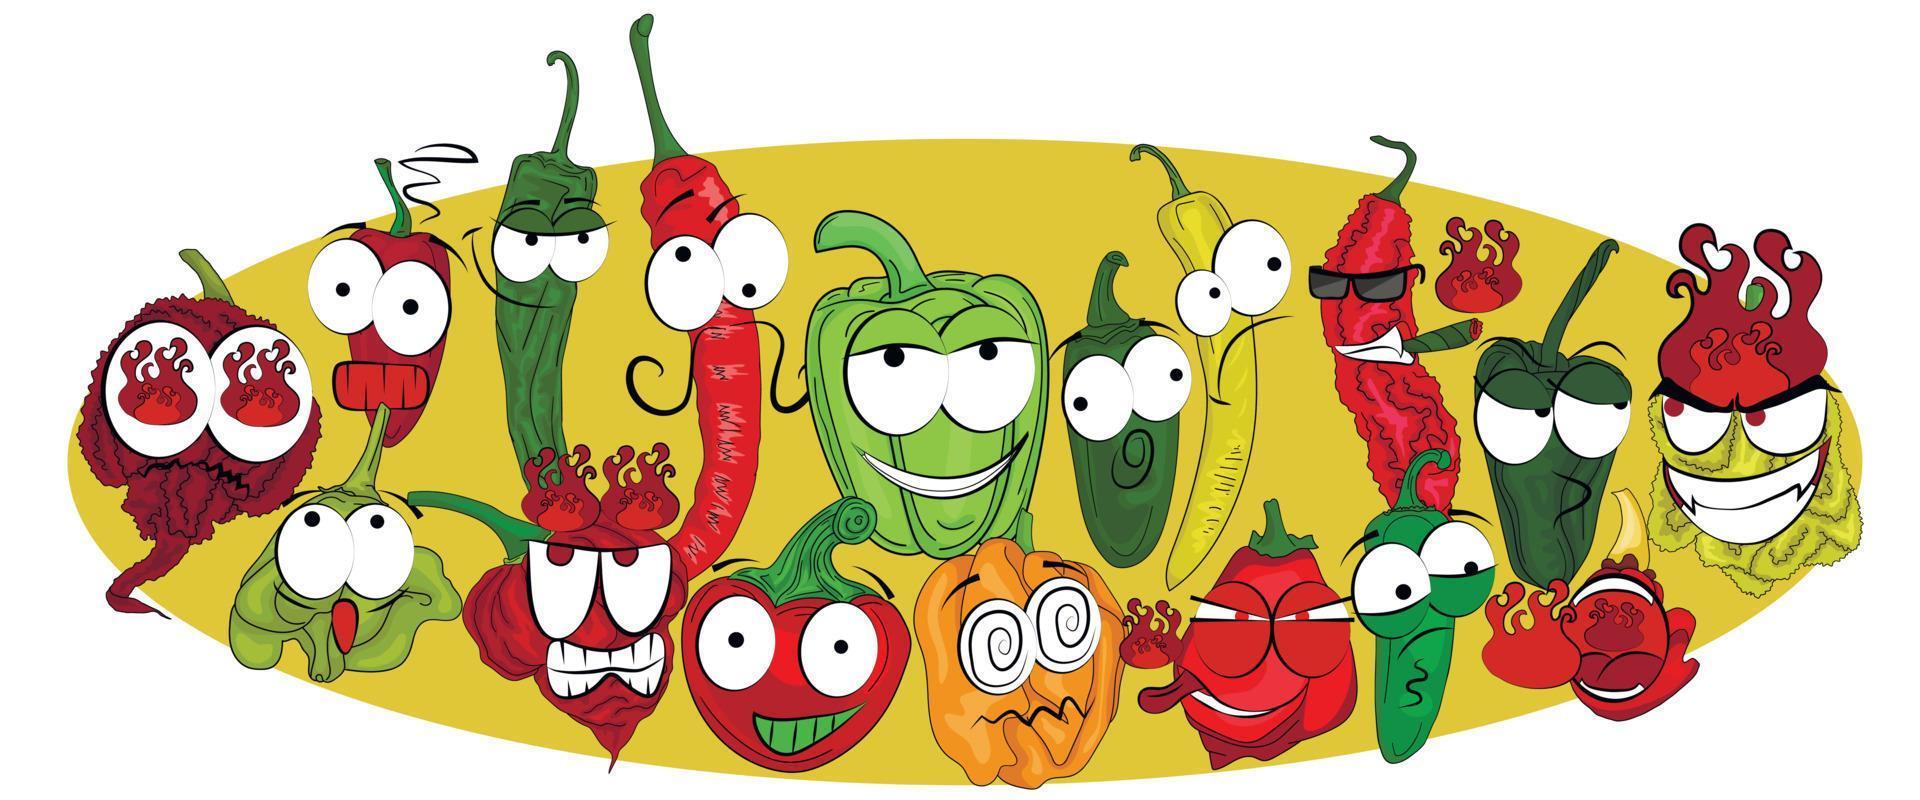 ilustração de pimenta de doce a muito quente em um fundo colorido. pimentas desenhadas em estilo cartoon com emoções diferentes. vetor